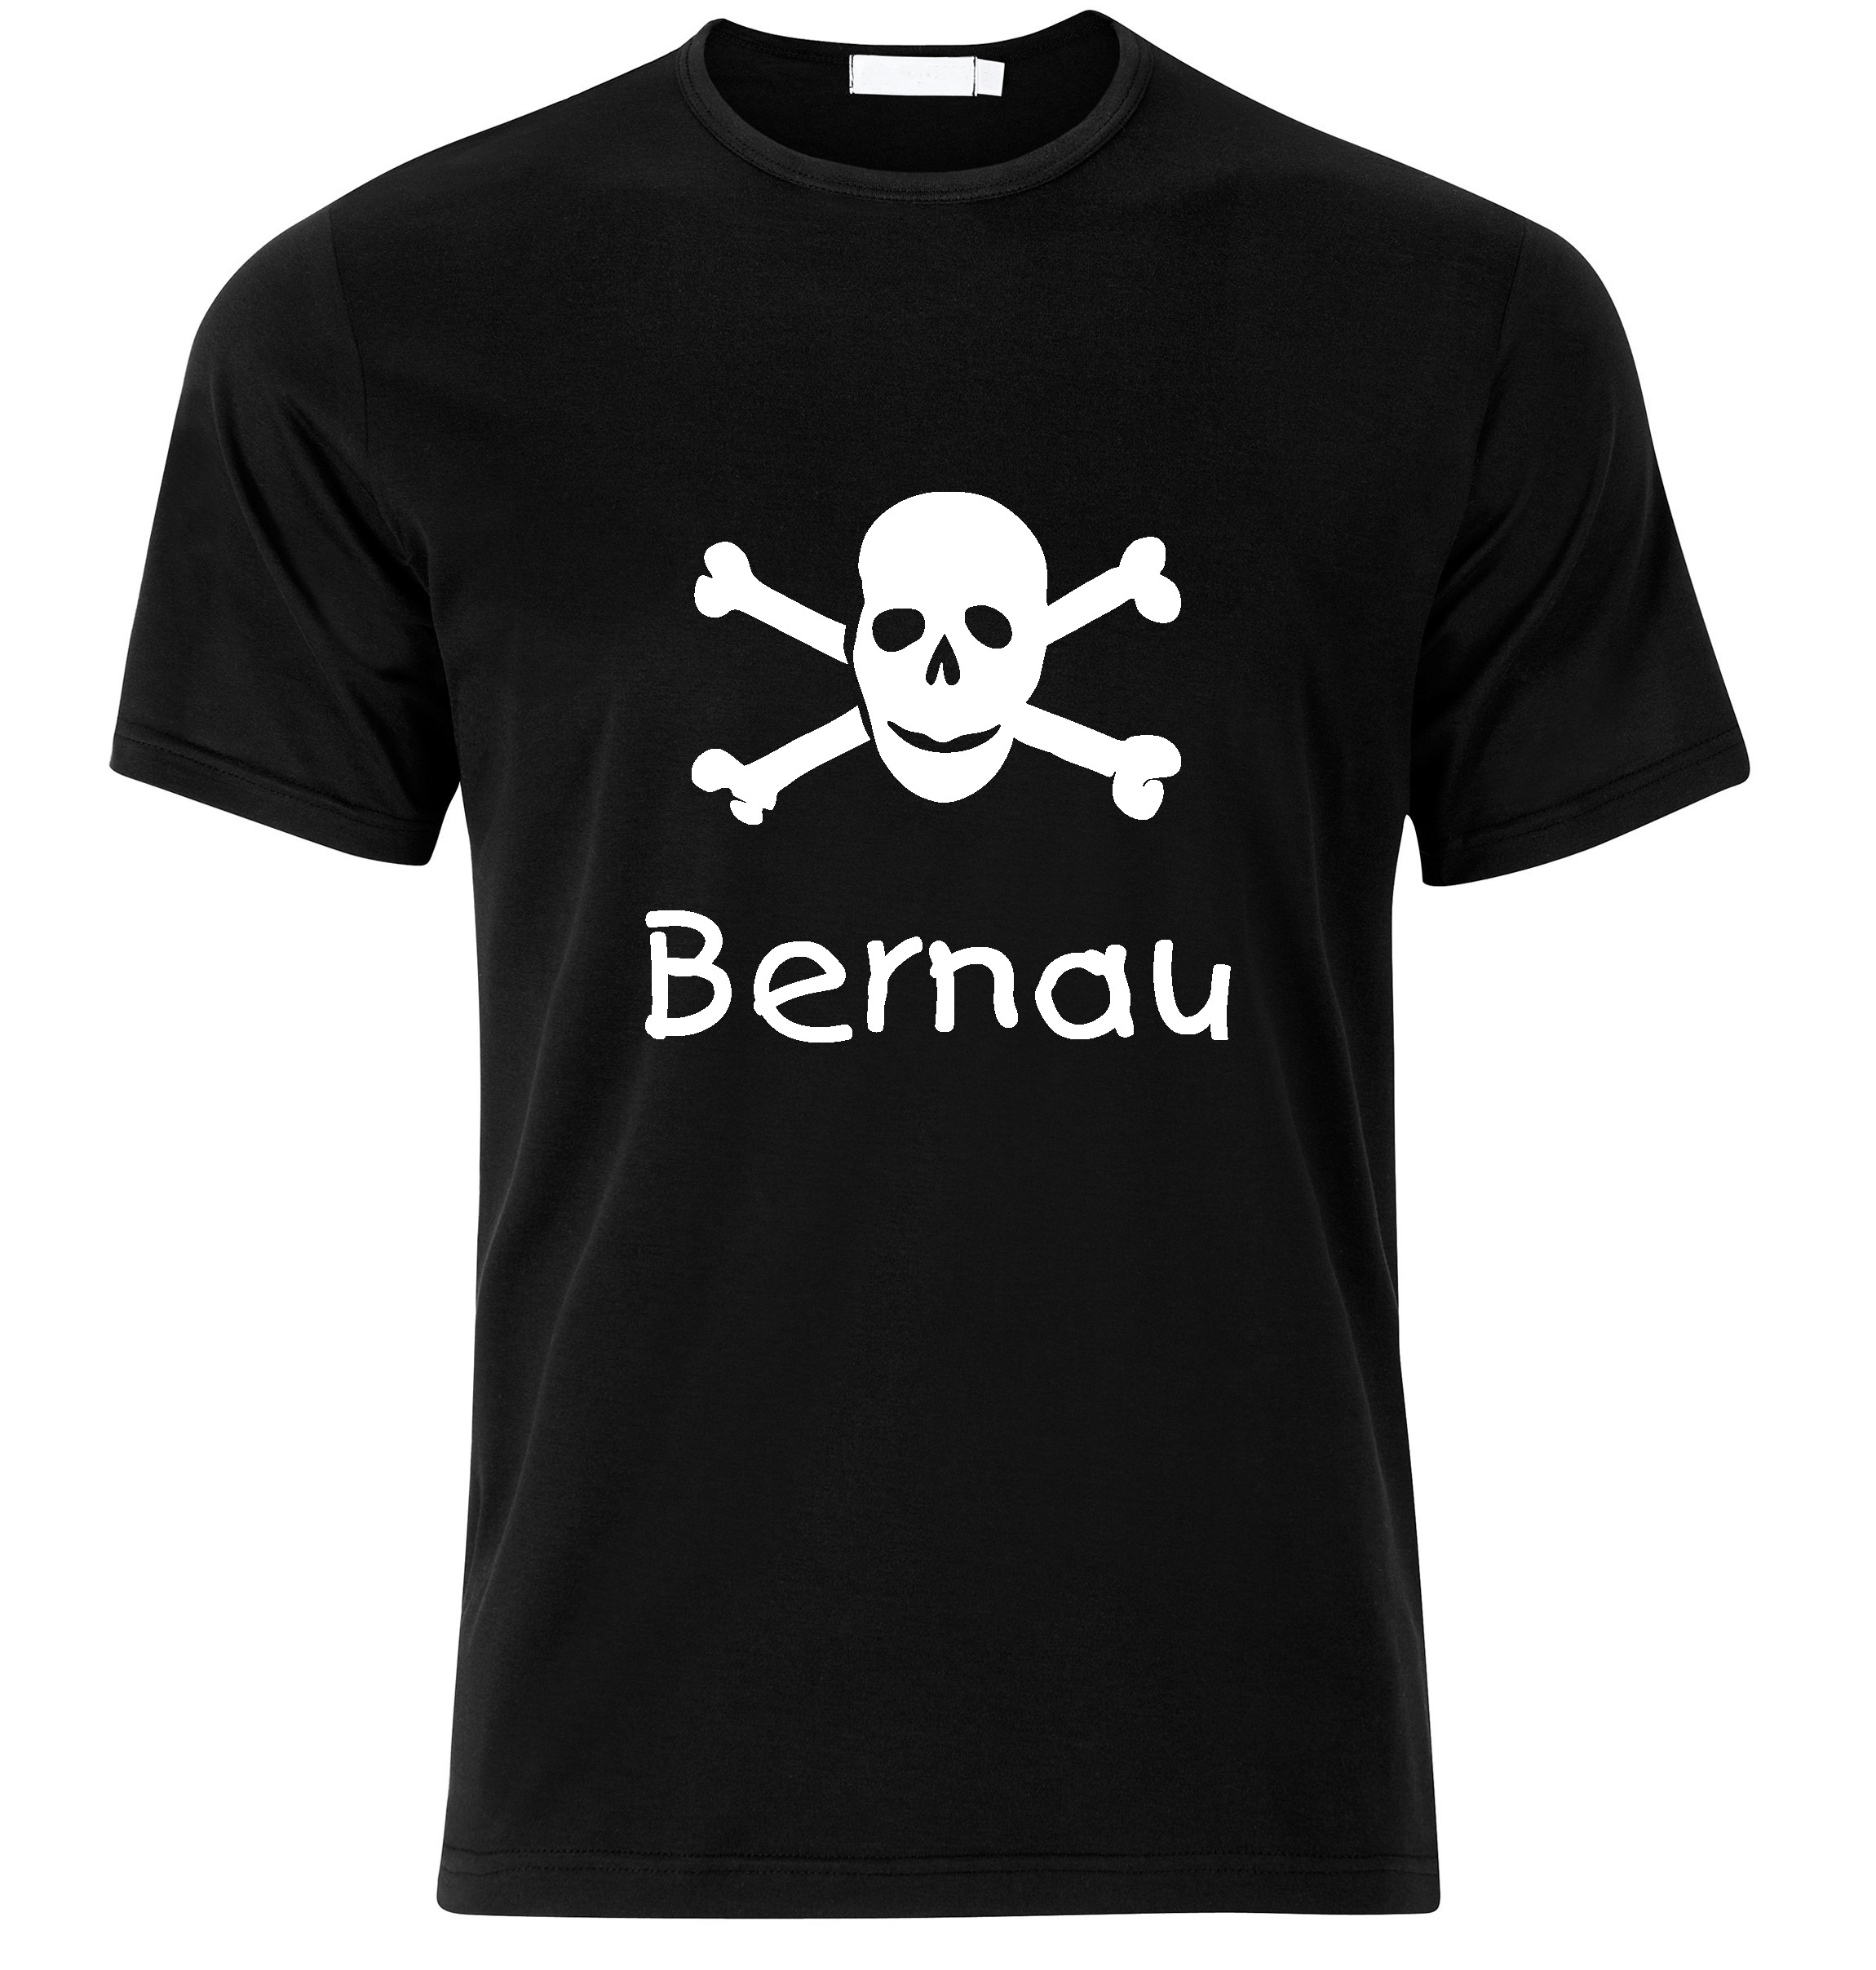 T-Shirt Bernau Jolly Roger, Totenkopf